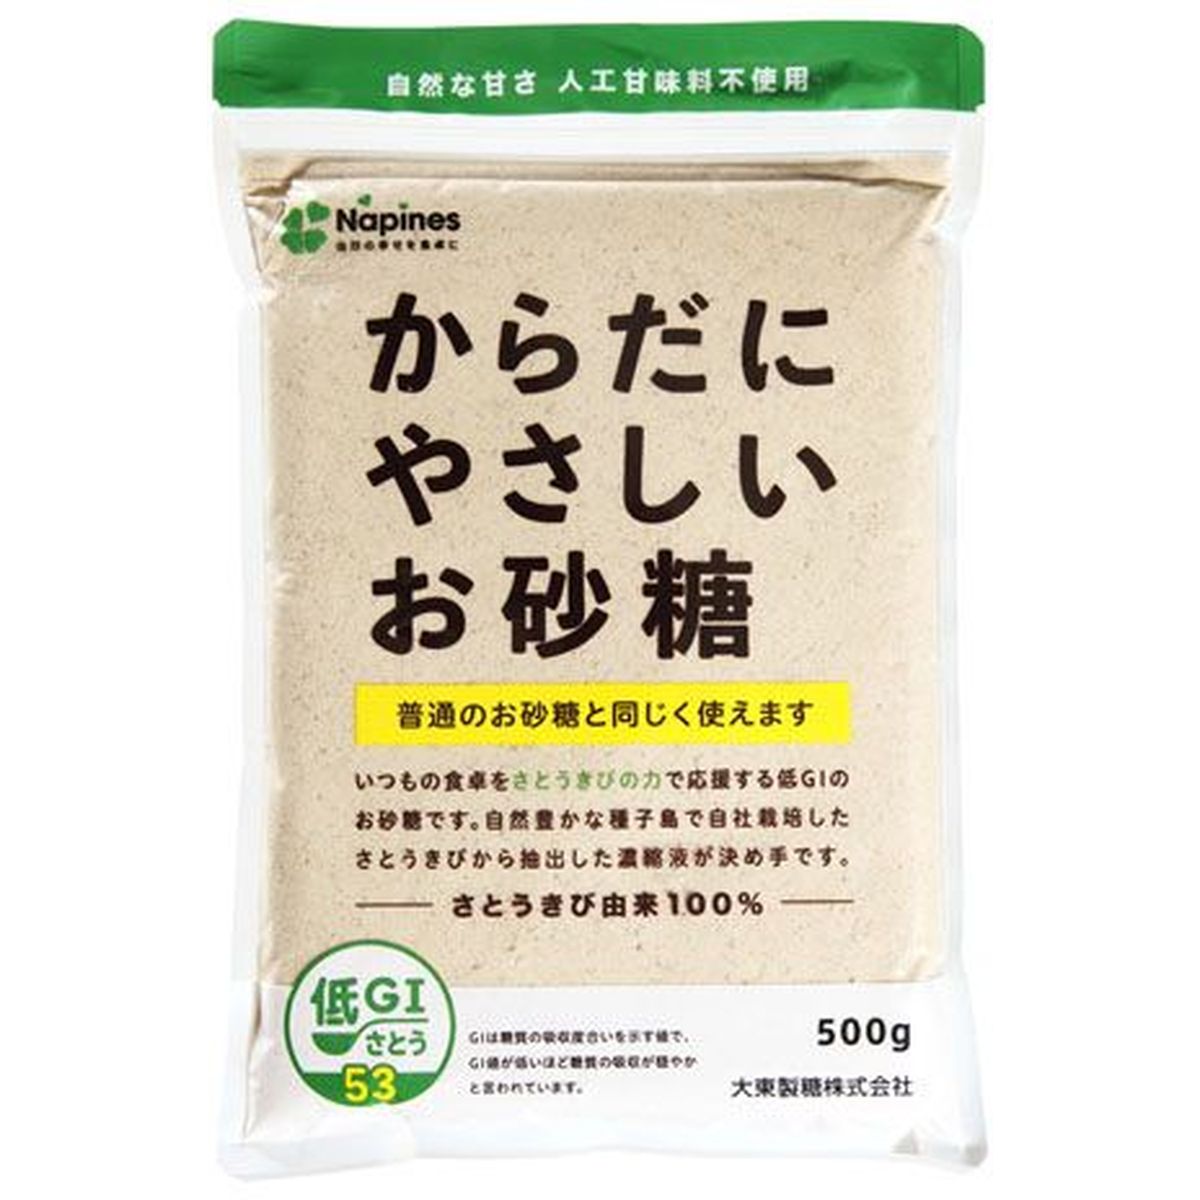 【10個入リ】大東製糖 カラダニヤサシイオ砂糖 500g